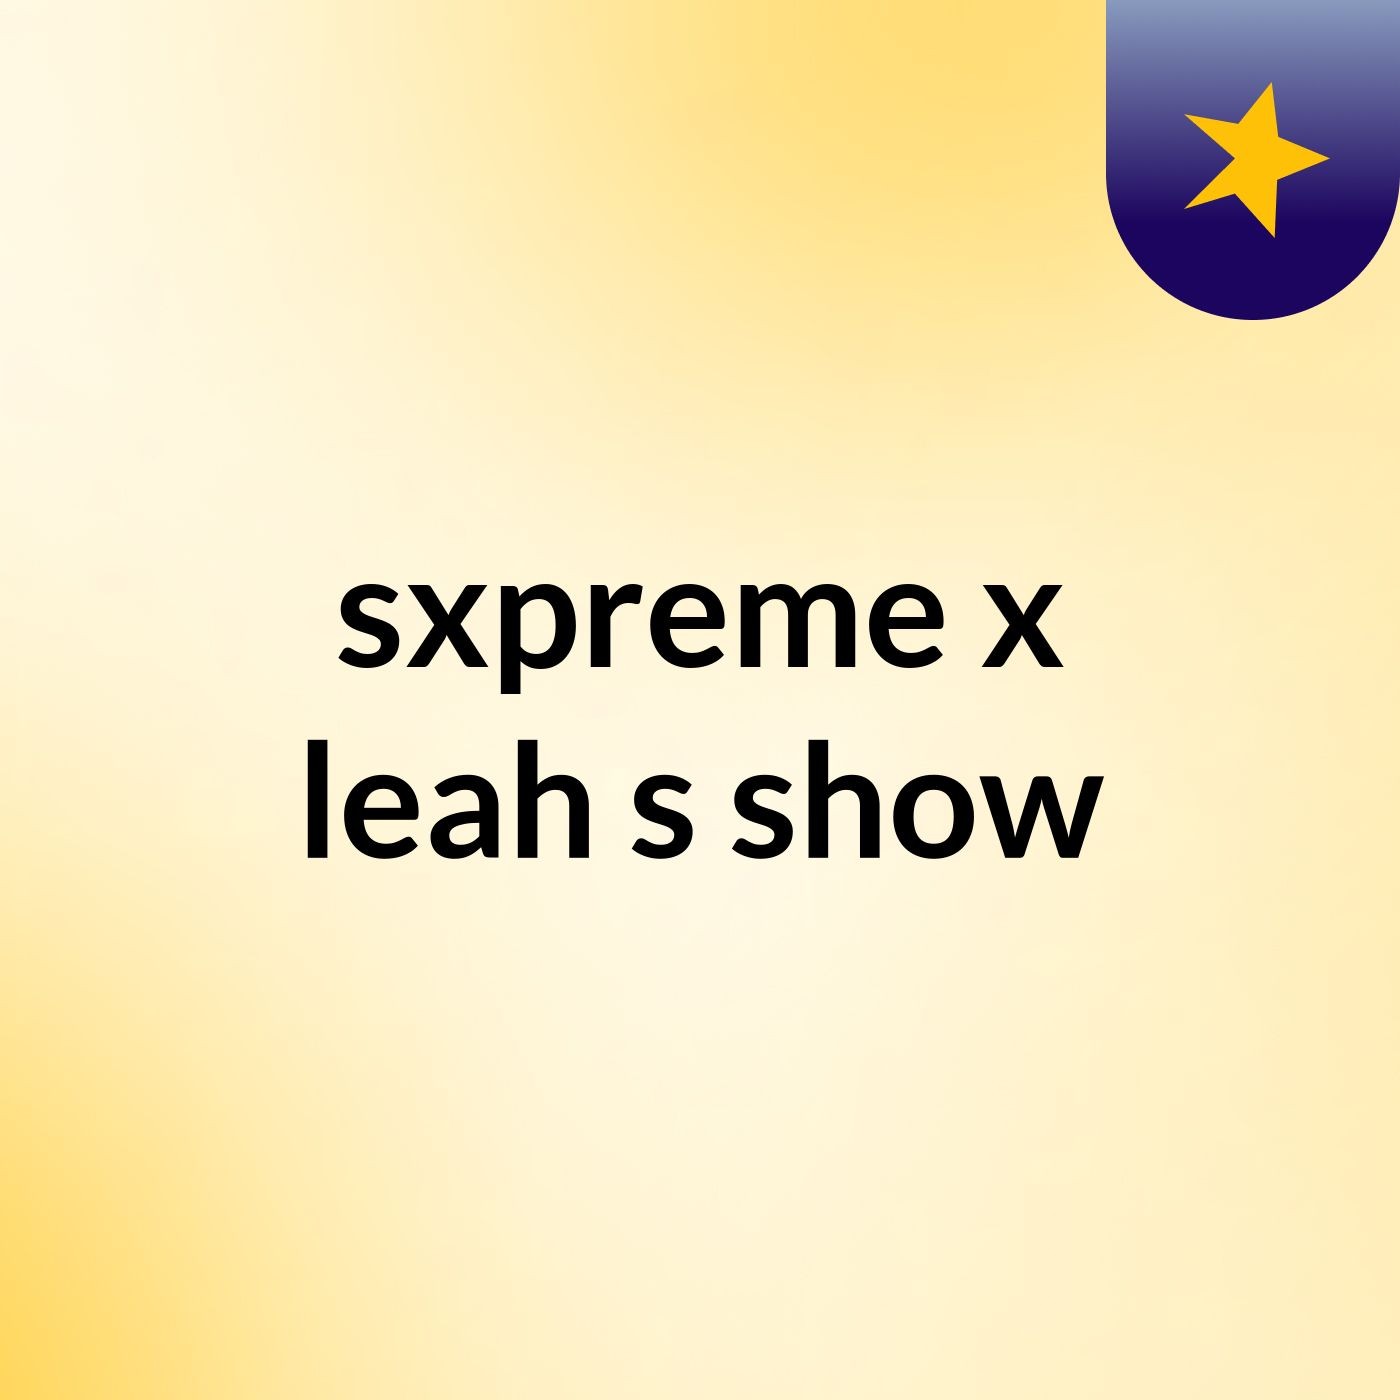 Episode 2 - sxpreme x leah's show